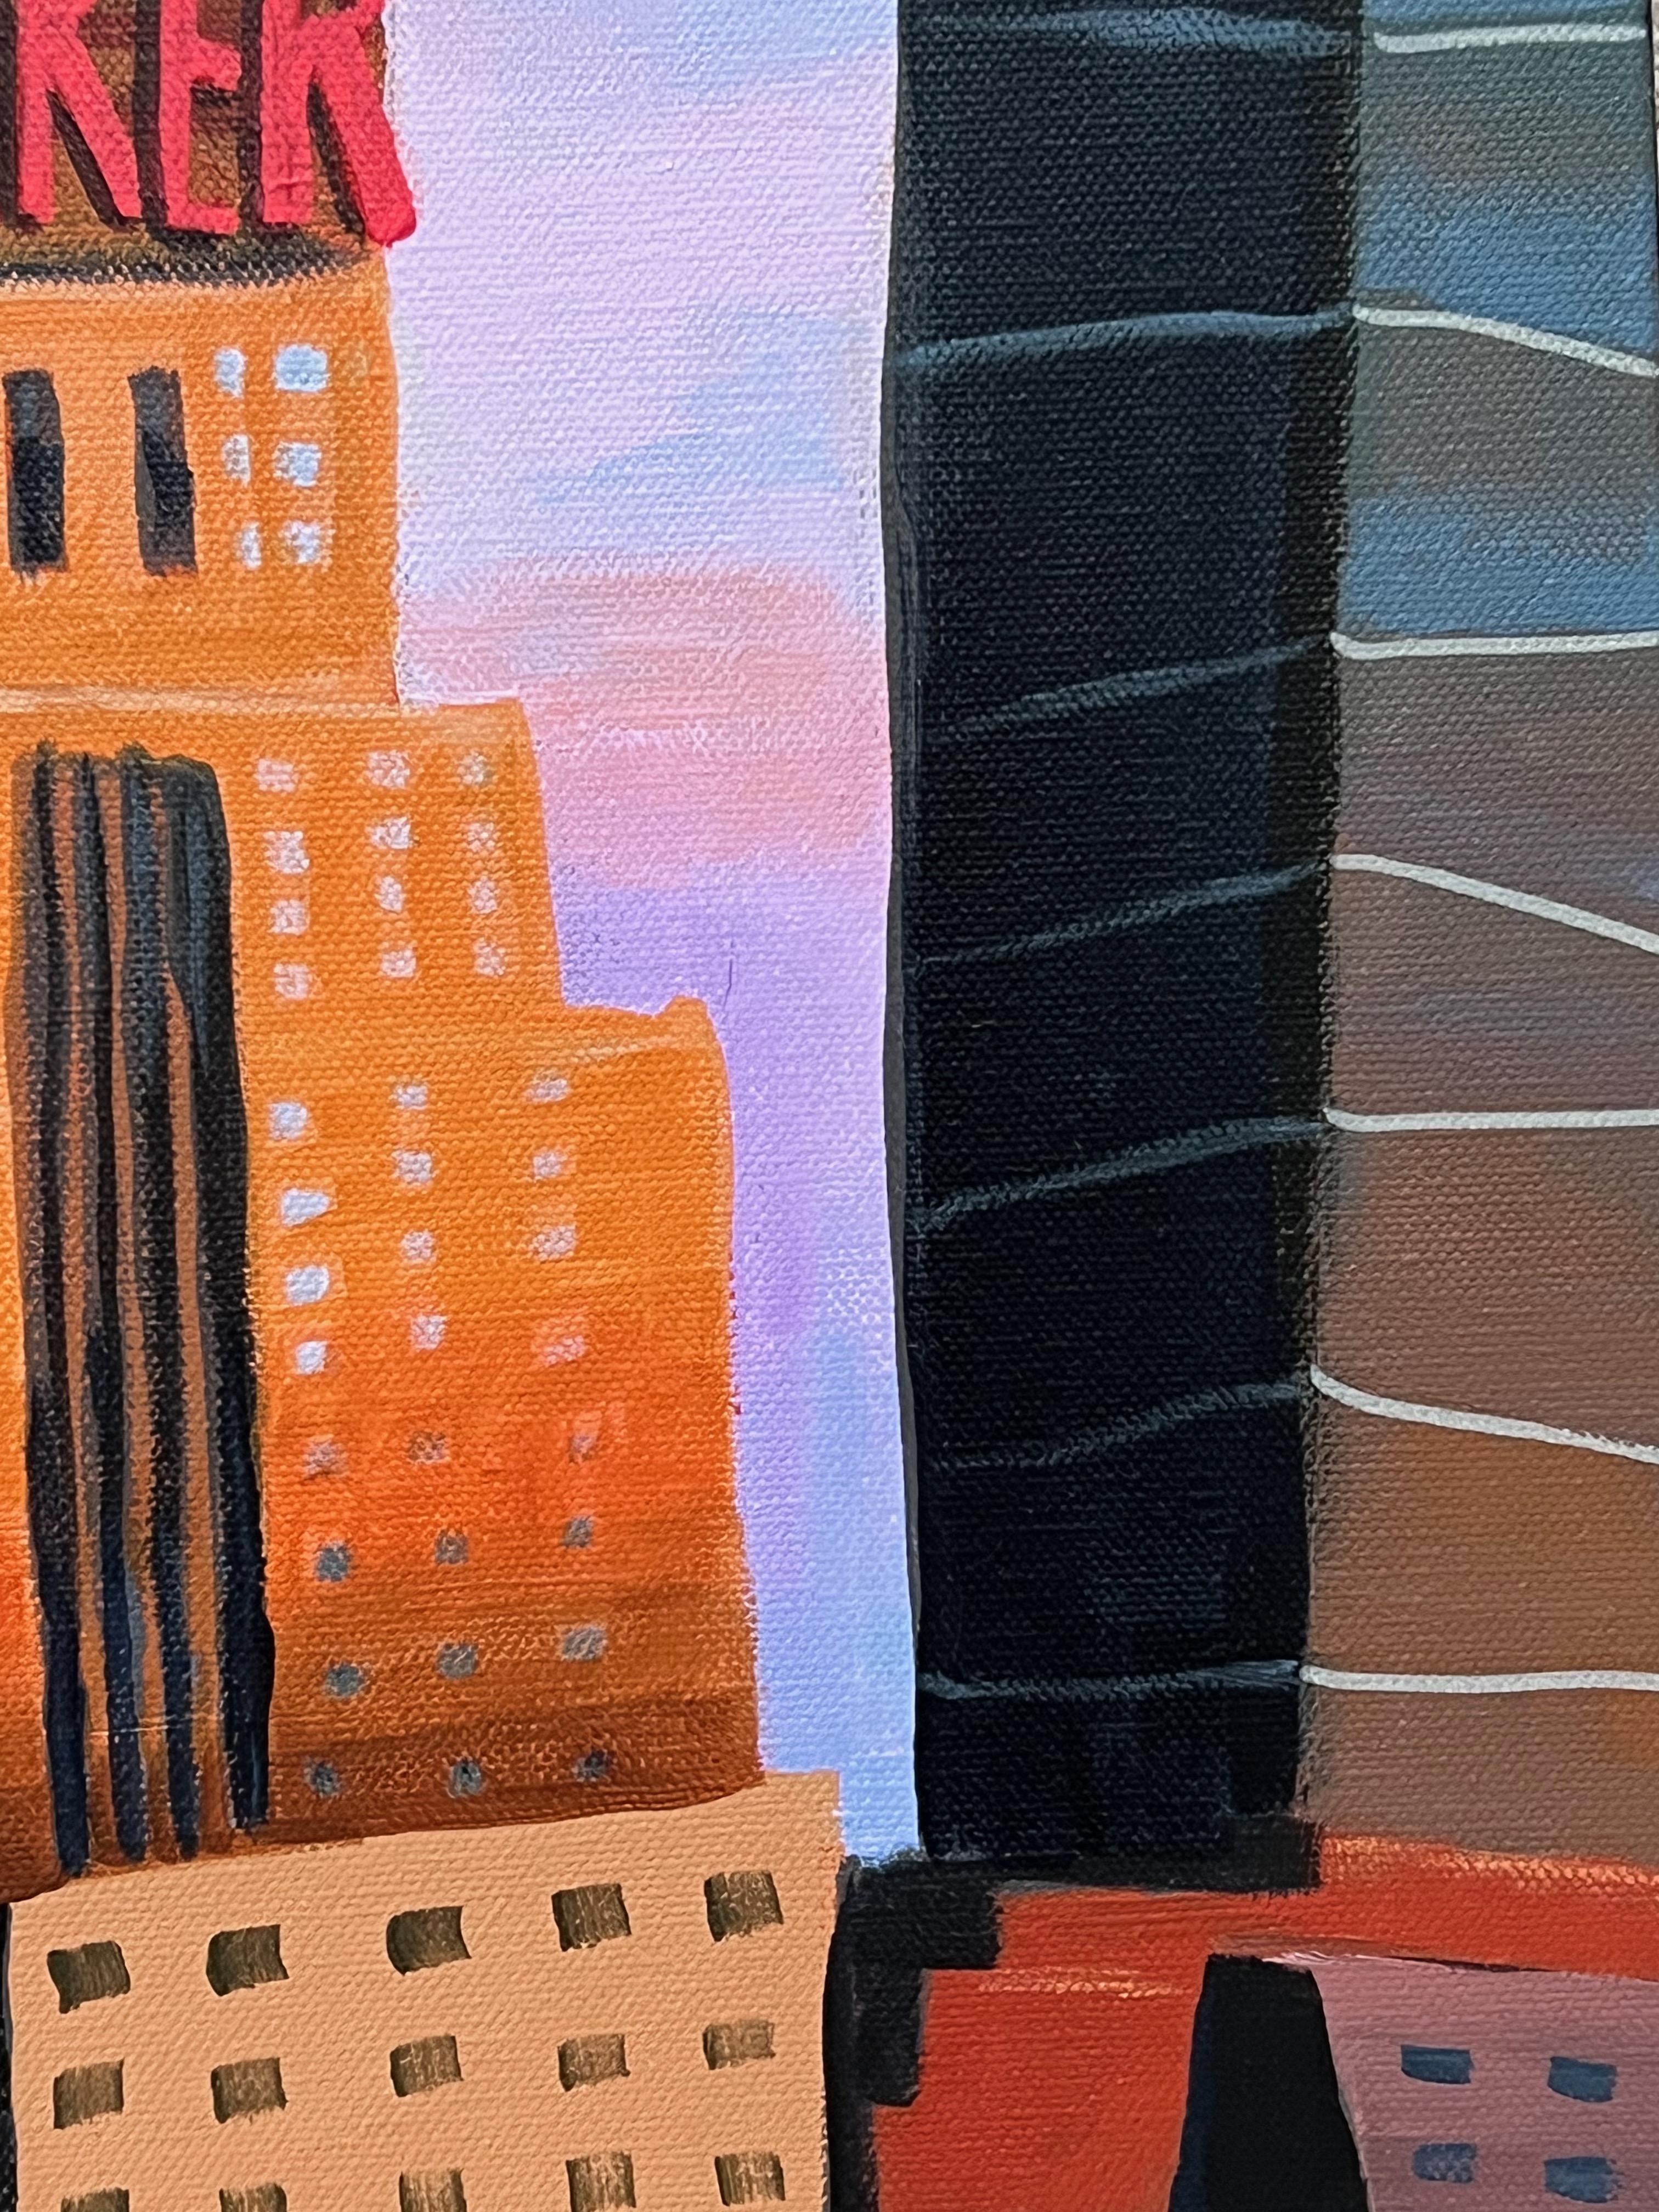 New Yorker and Empire State Building, peinture originale - Noir Landscape Painting par Brian Callaghan